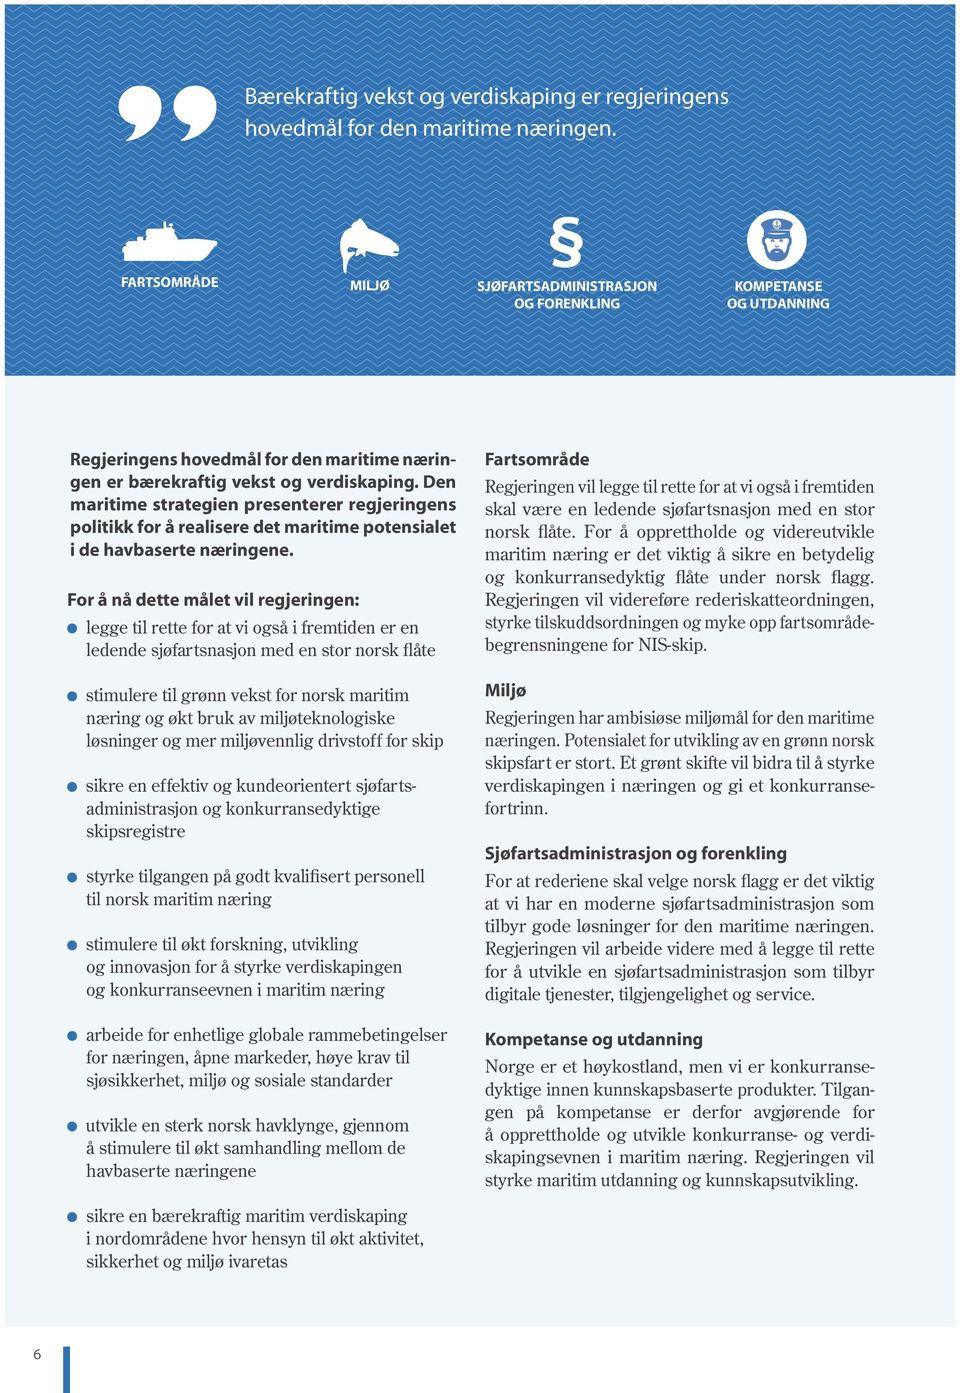 Den maritime strategien presenterer regjeringens politikk for å realisere det maritime potensialet i de havbaserte næringene.